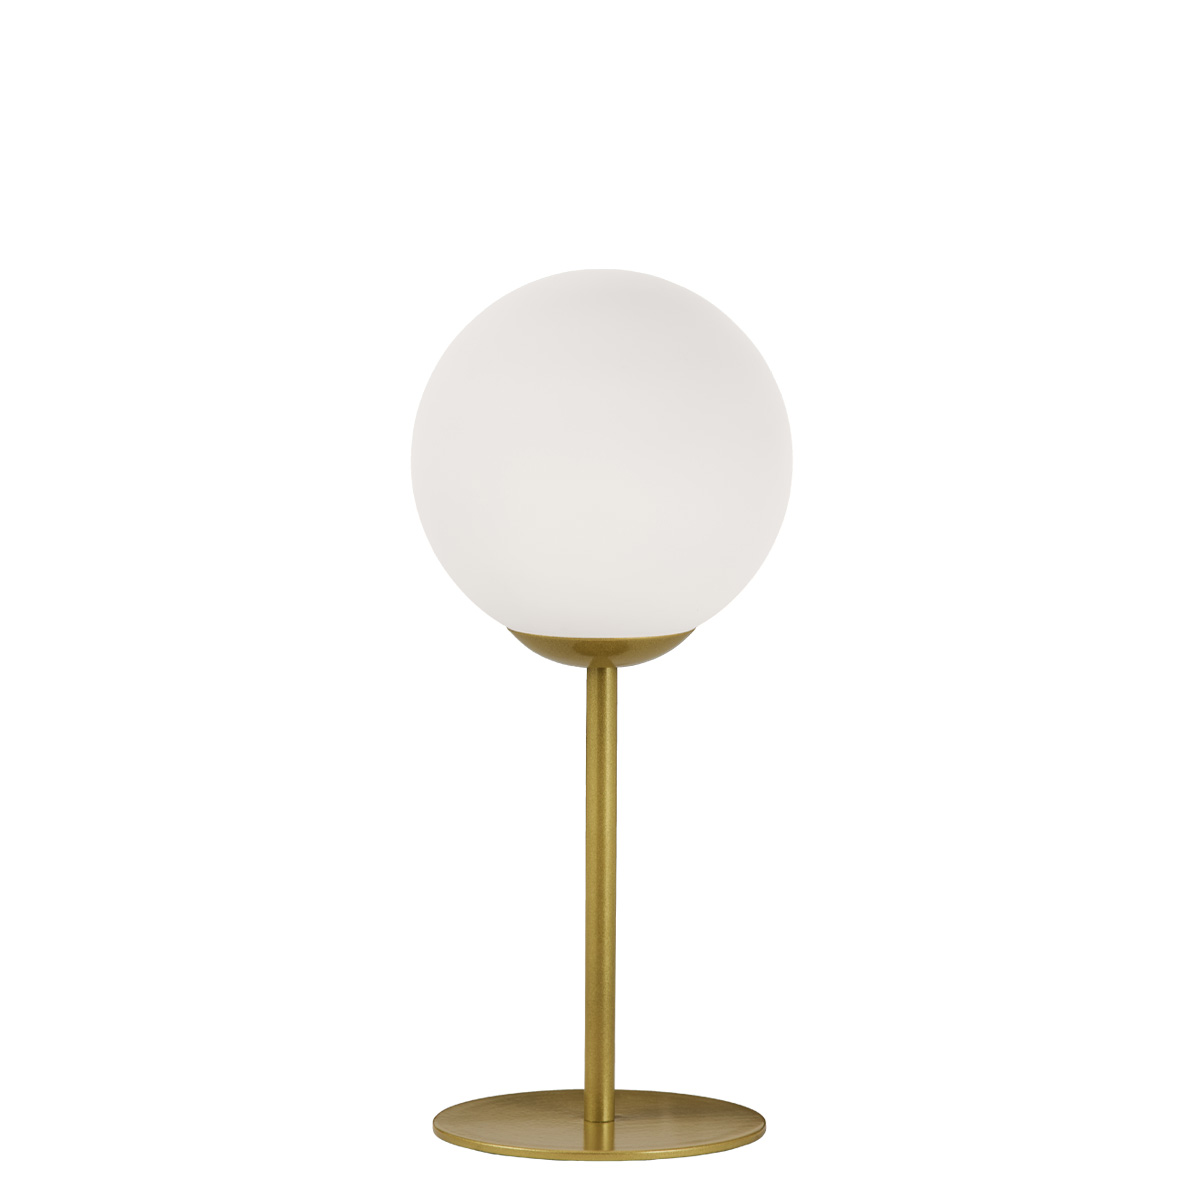 Φωτιστικό μπάλα επιτραπέζιο ΜΠΑΛΕΣ sphere-shaped table lamp